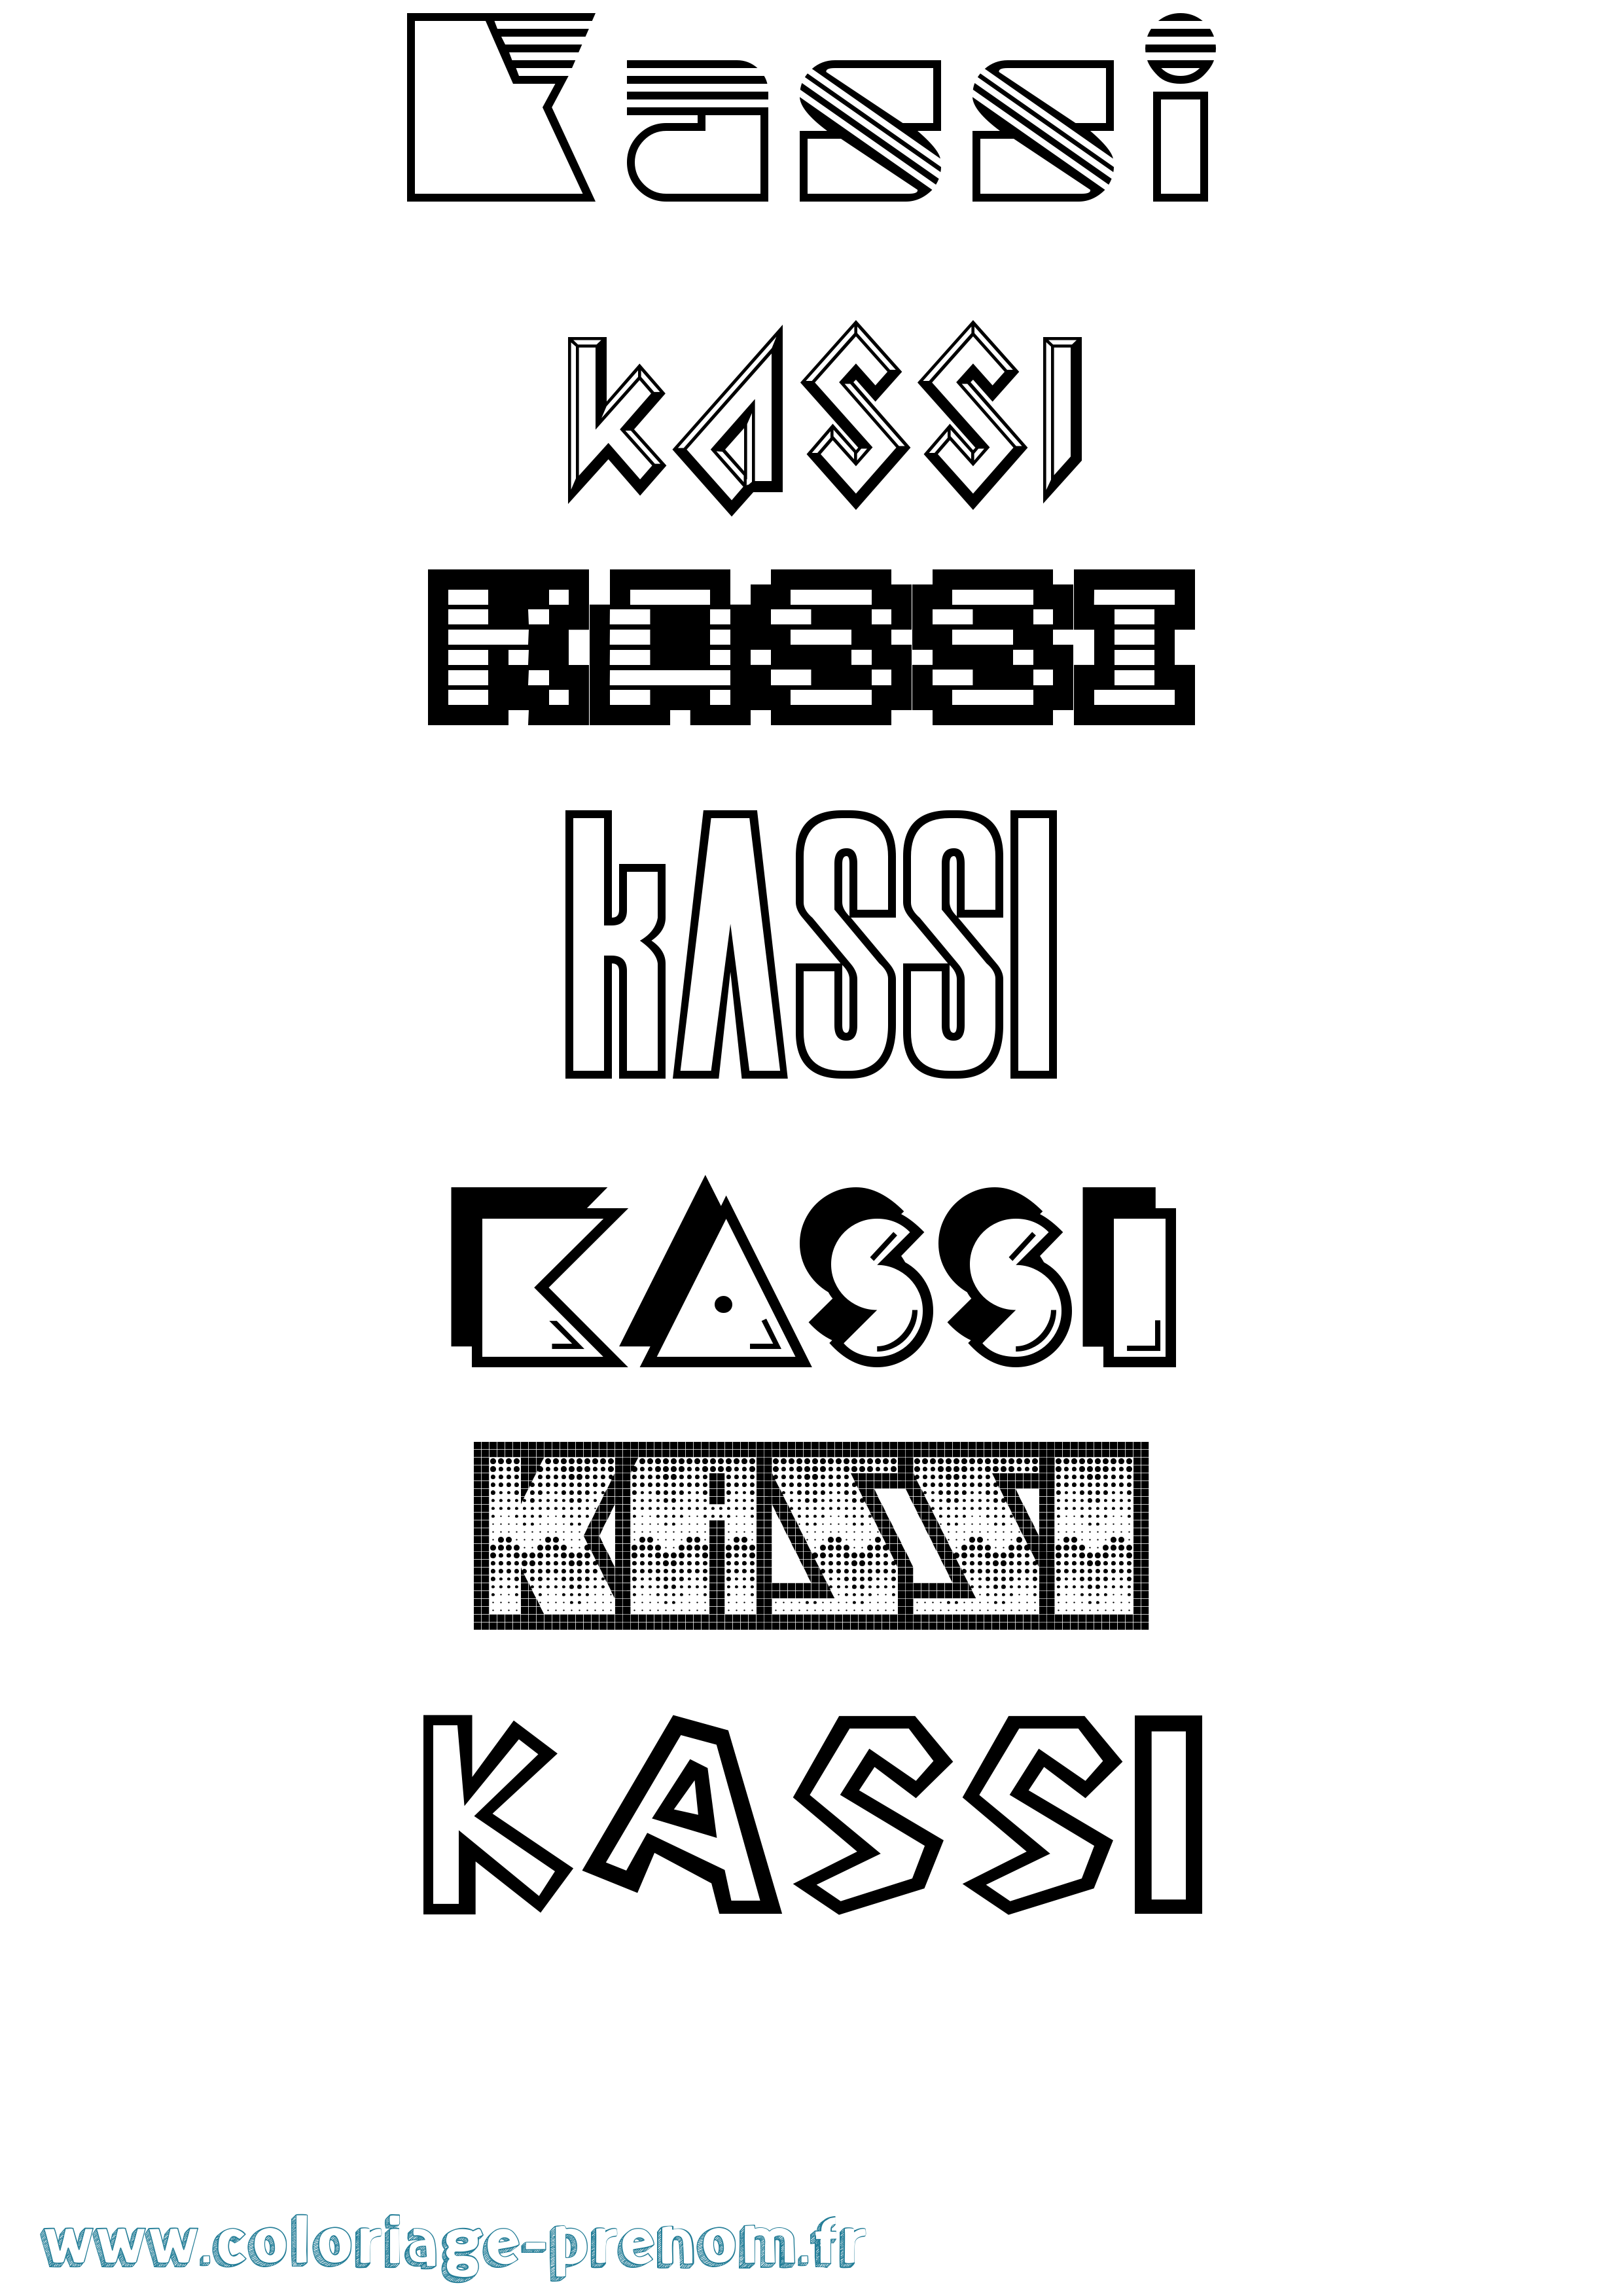 Coloriage prénom Kassi Jeux Vidéos